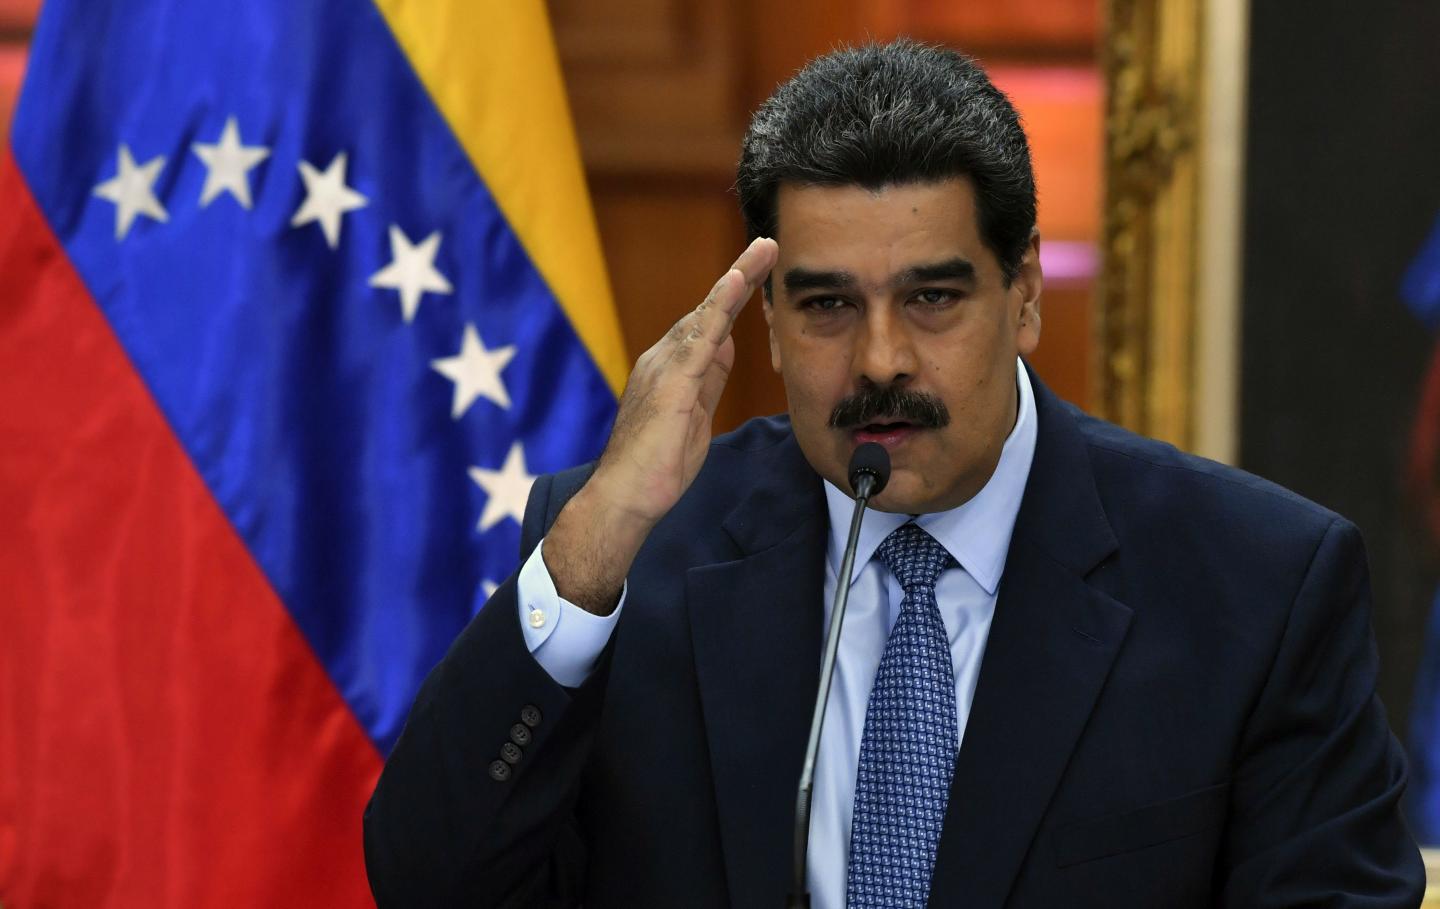 Venezuela’dan Türkiye ’’hami devlet olsun’’ teklifi